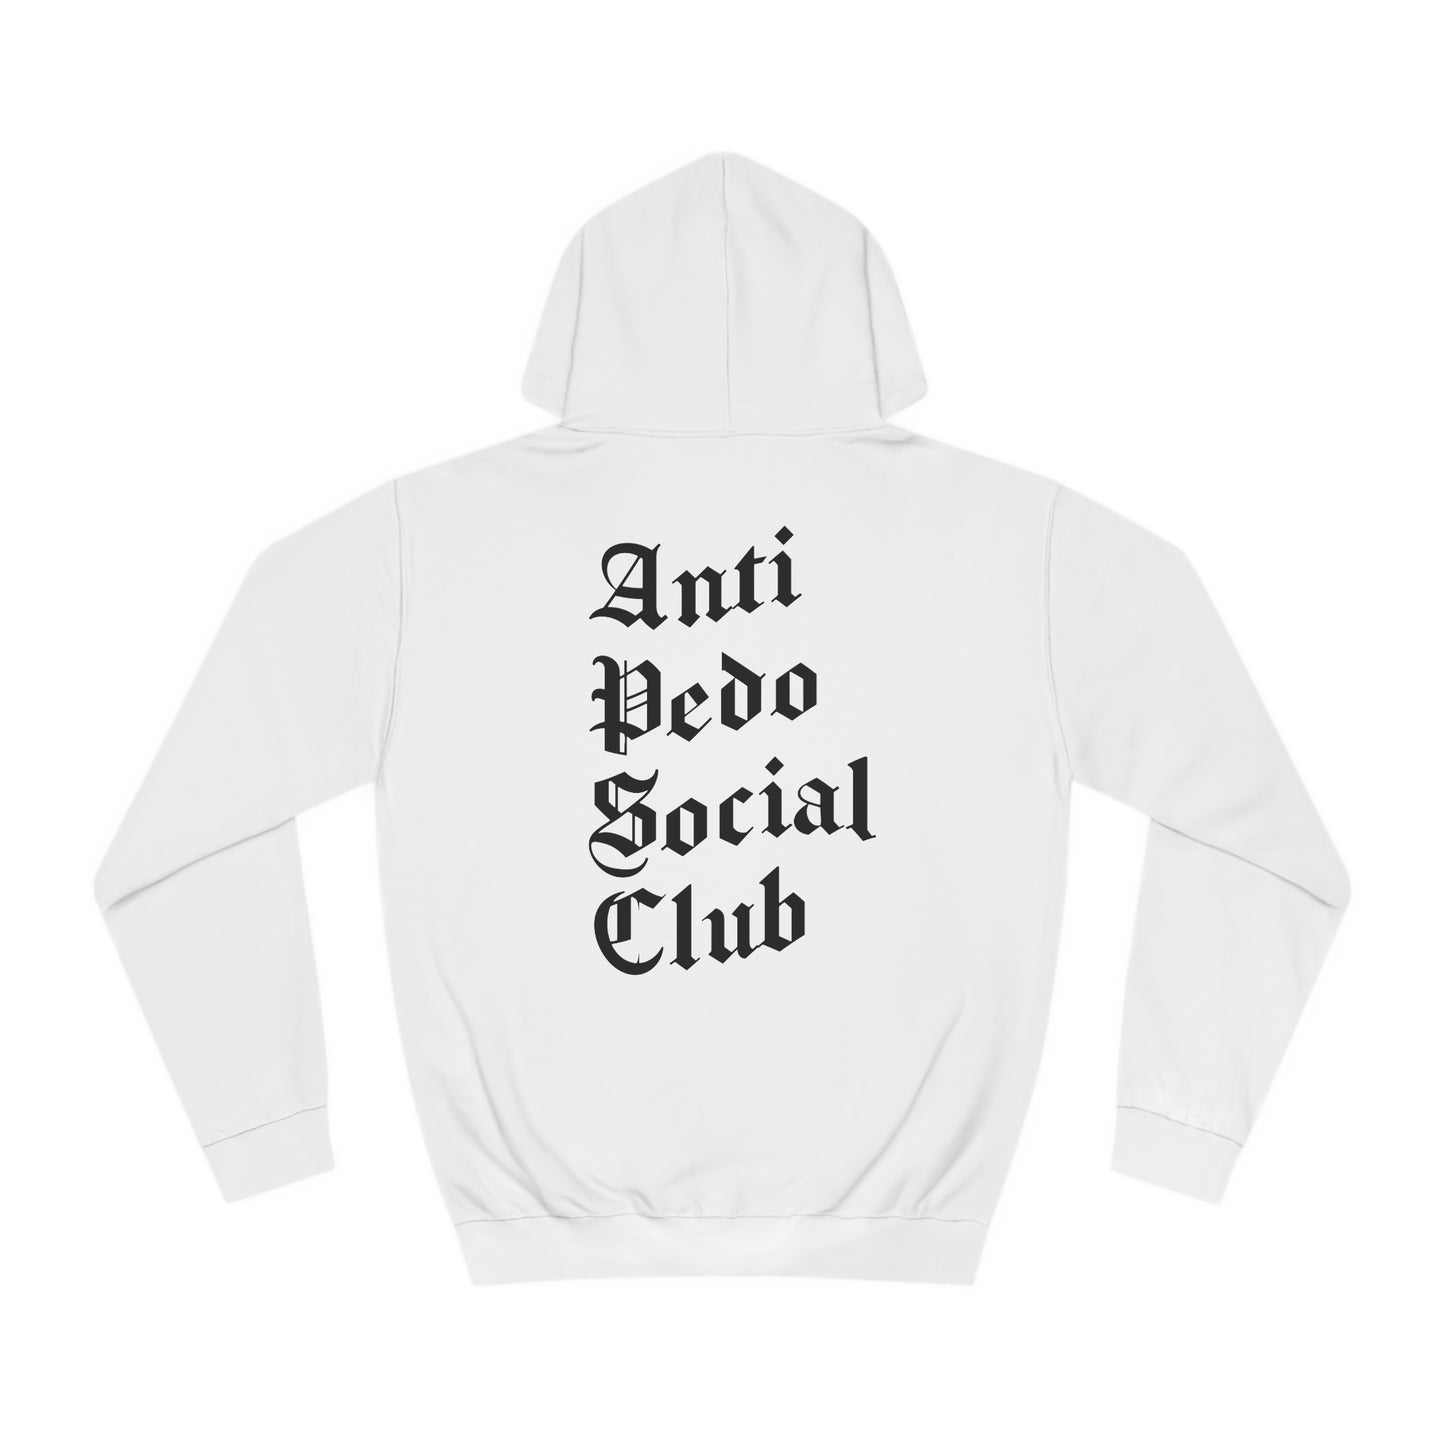 Anti pedo social club hoodie